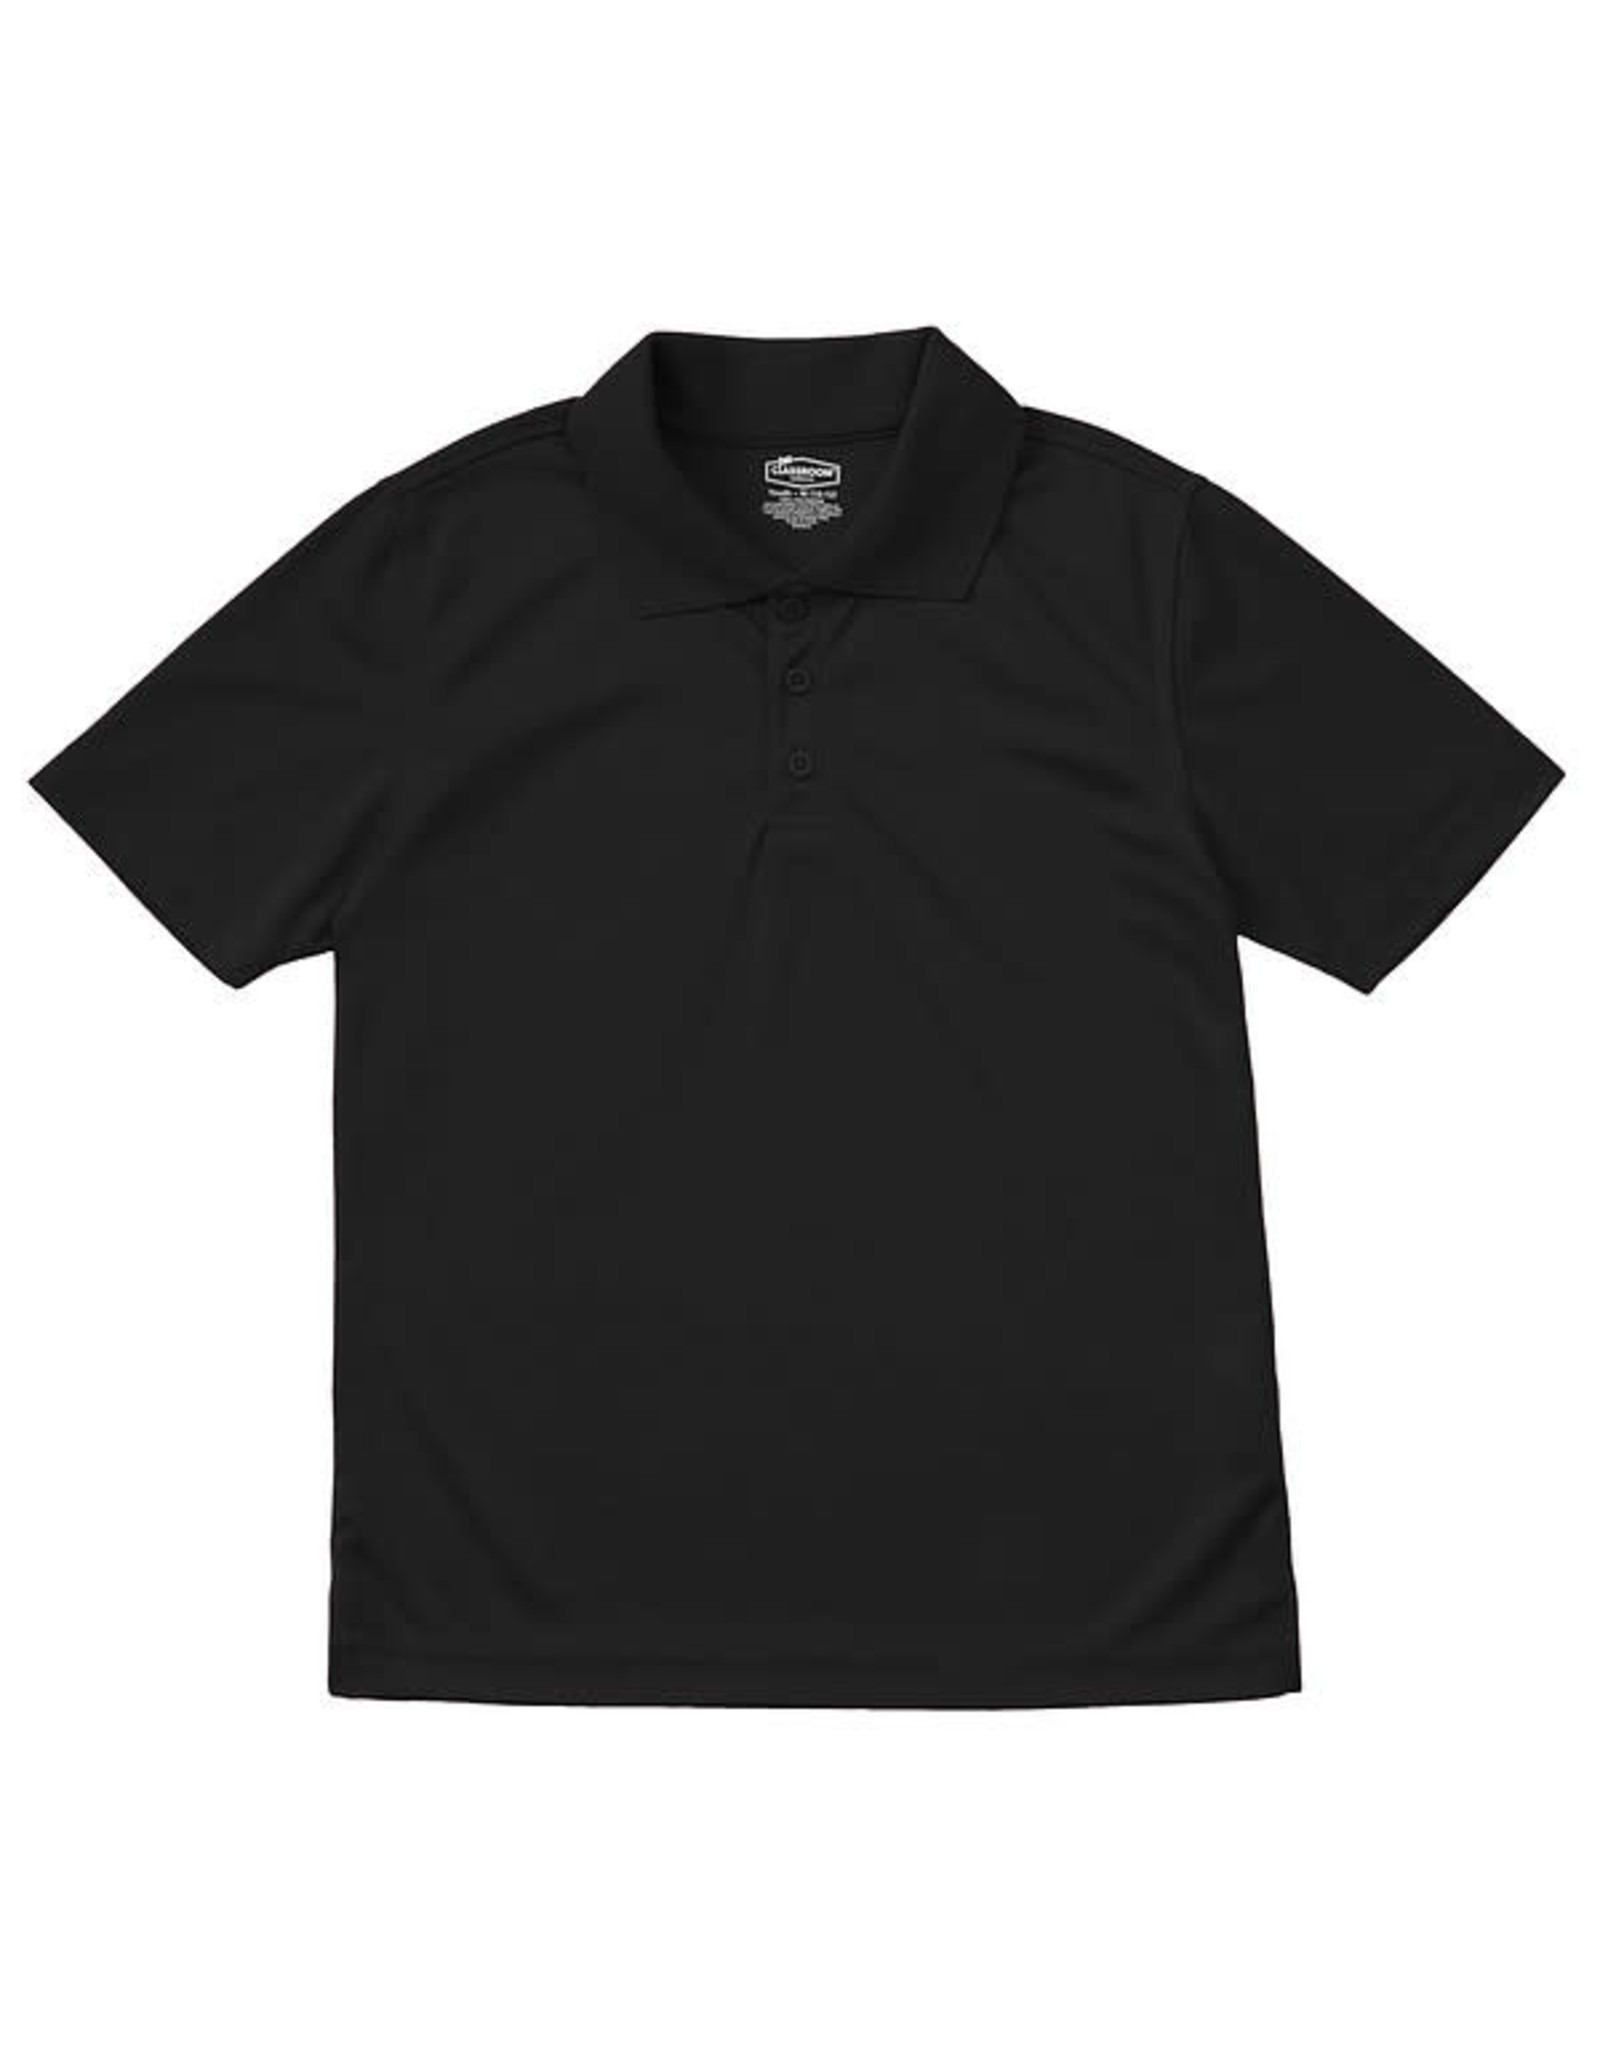 Classroom Adult Unisex Moisture-Wicking Polo Shirt SSBK S